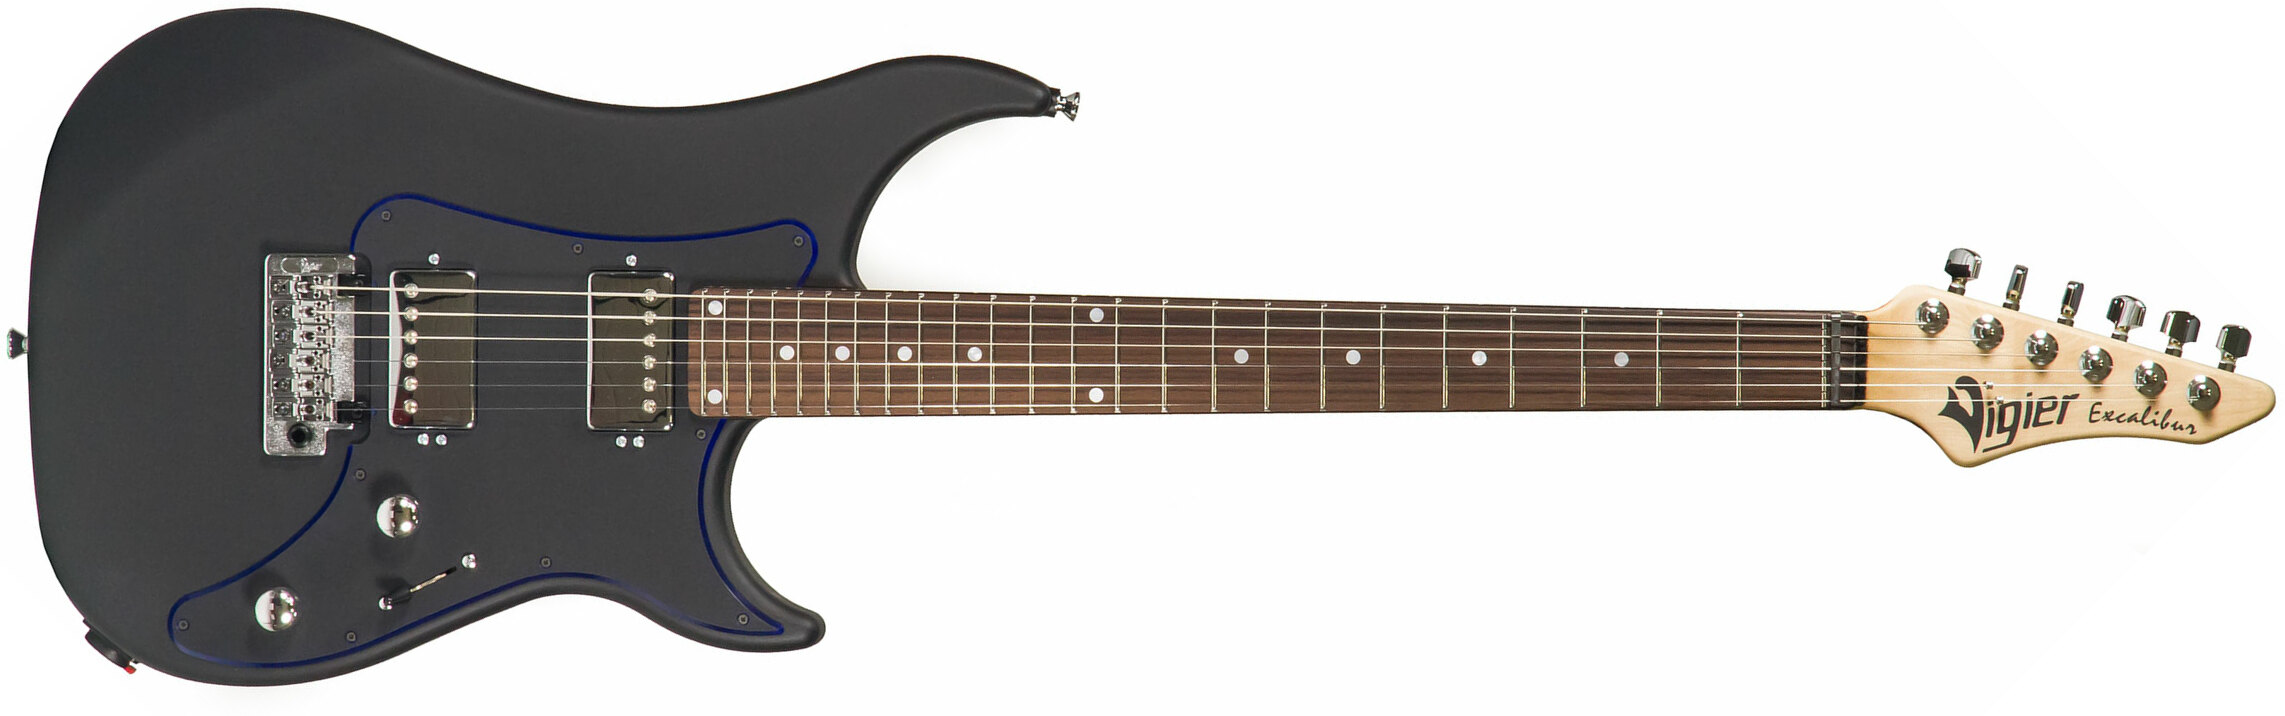 Vigier Excalibur Indus Hh Trem Rw - Textured Black - Double cut electric guitar - Main picture